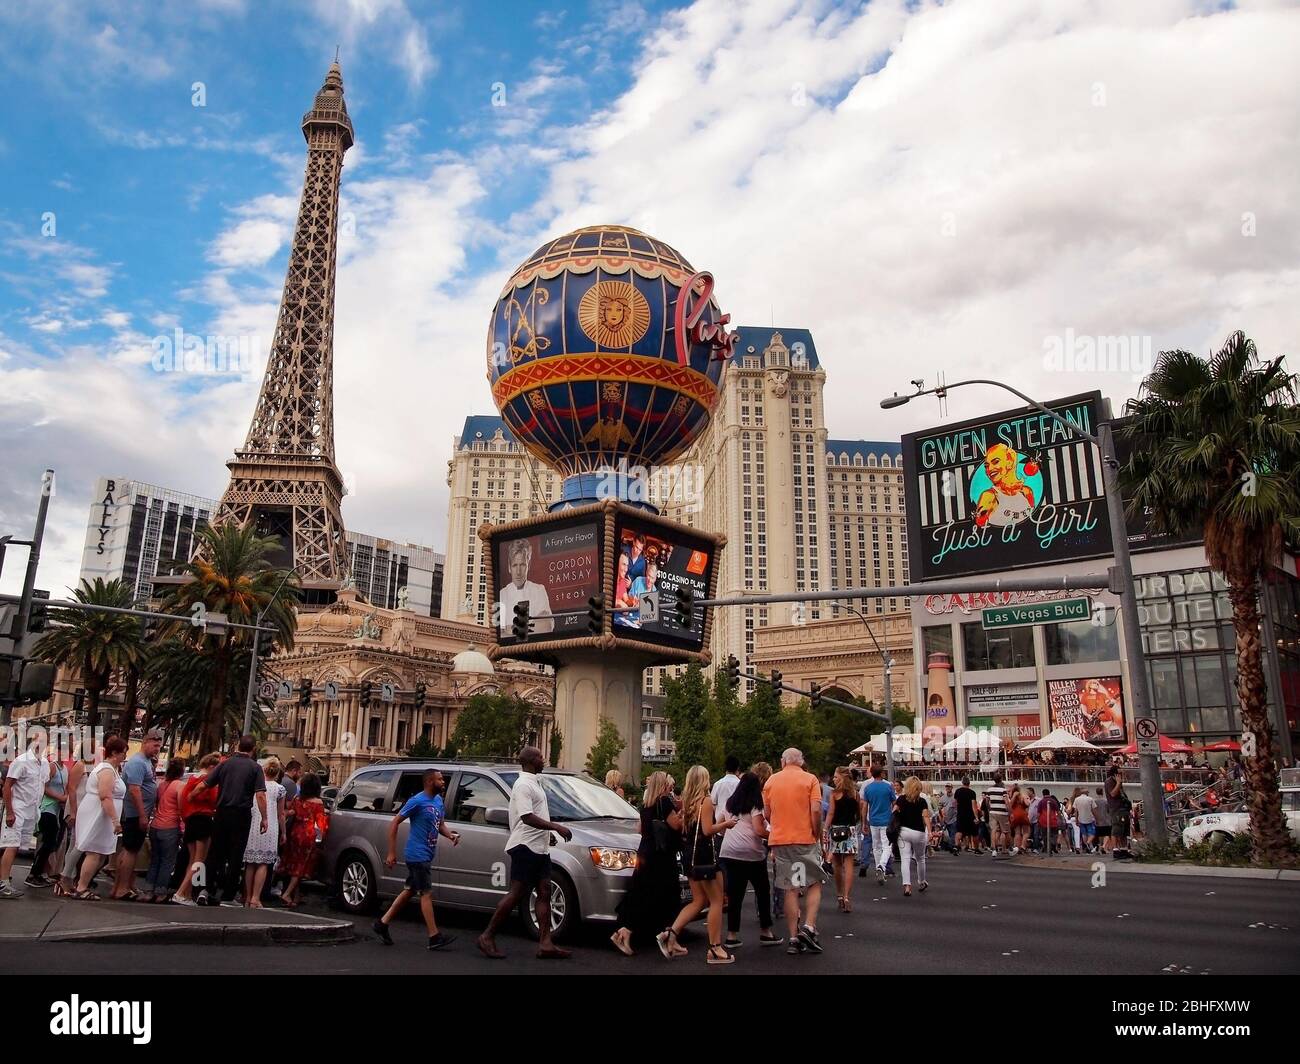 LAS VEGAS, NEVADA - 21 JUILLET 2018 : des touristes traversent le Las Vegas Boulevard lors d'une journée d'été typique en visitant des casinos, des restaurants et d'autres lieux Banque D'Images